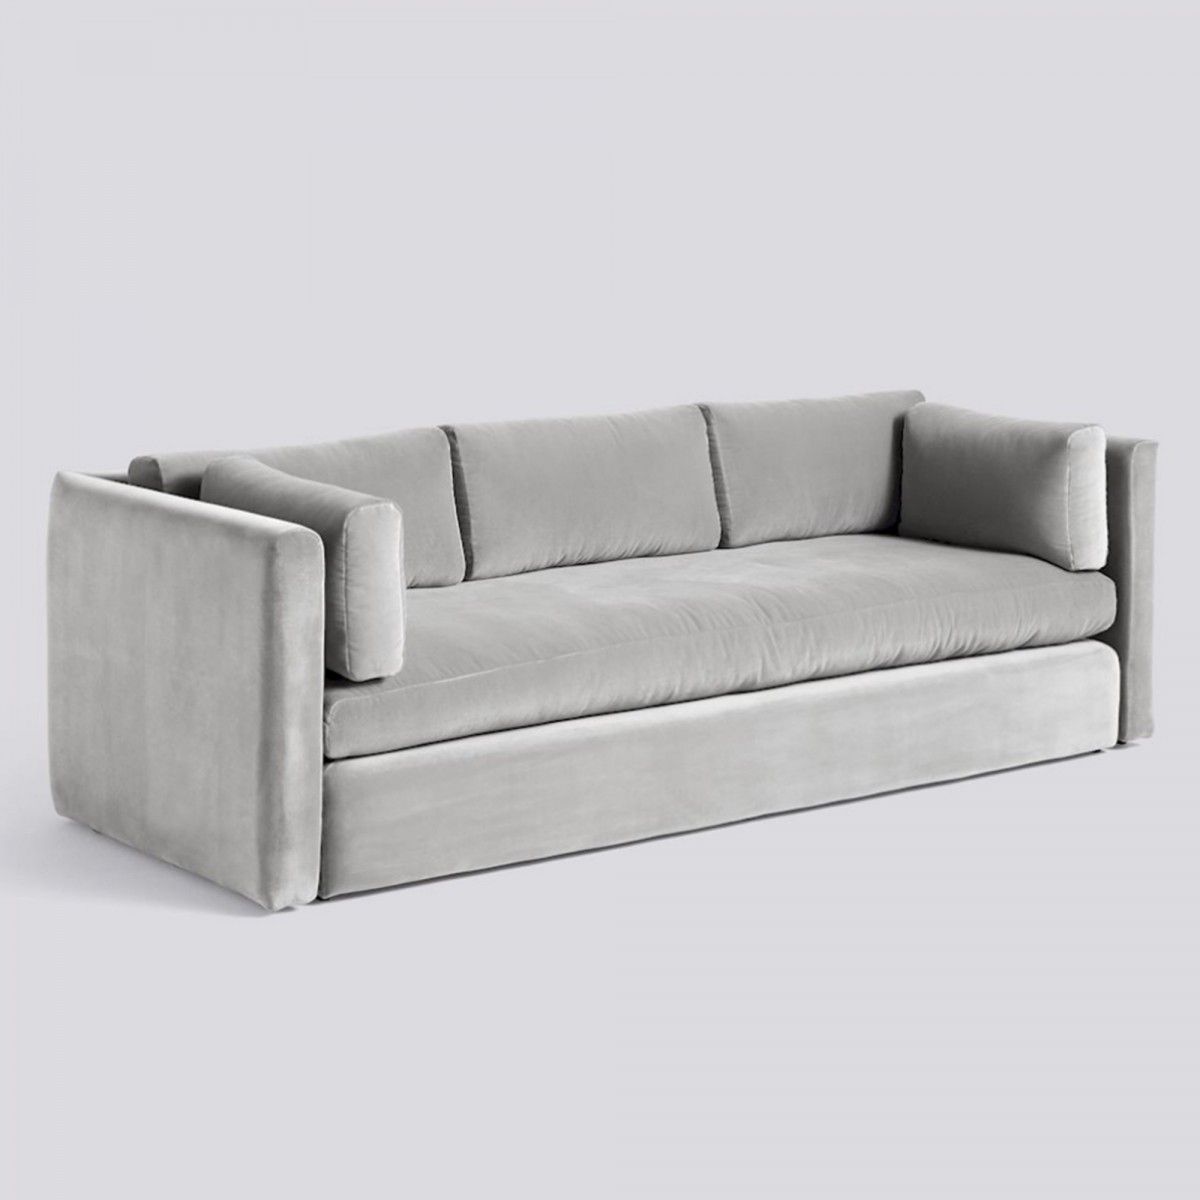 Hackney Light Grey Velvet Sofa – Hay | Grey Velvet Sofa, Hay Hackney Sofa,  Classic Sofa Designs Regarding Light Gray Velvet Sofas (Photo 15 of 15)